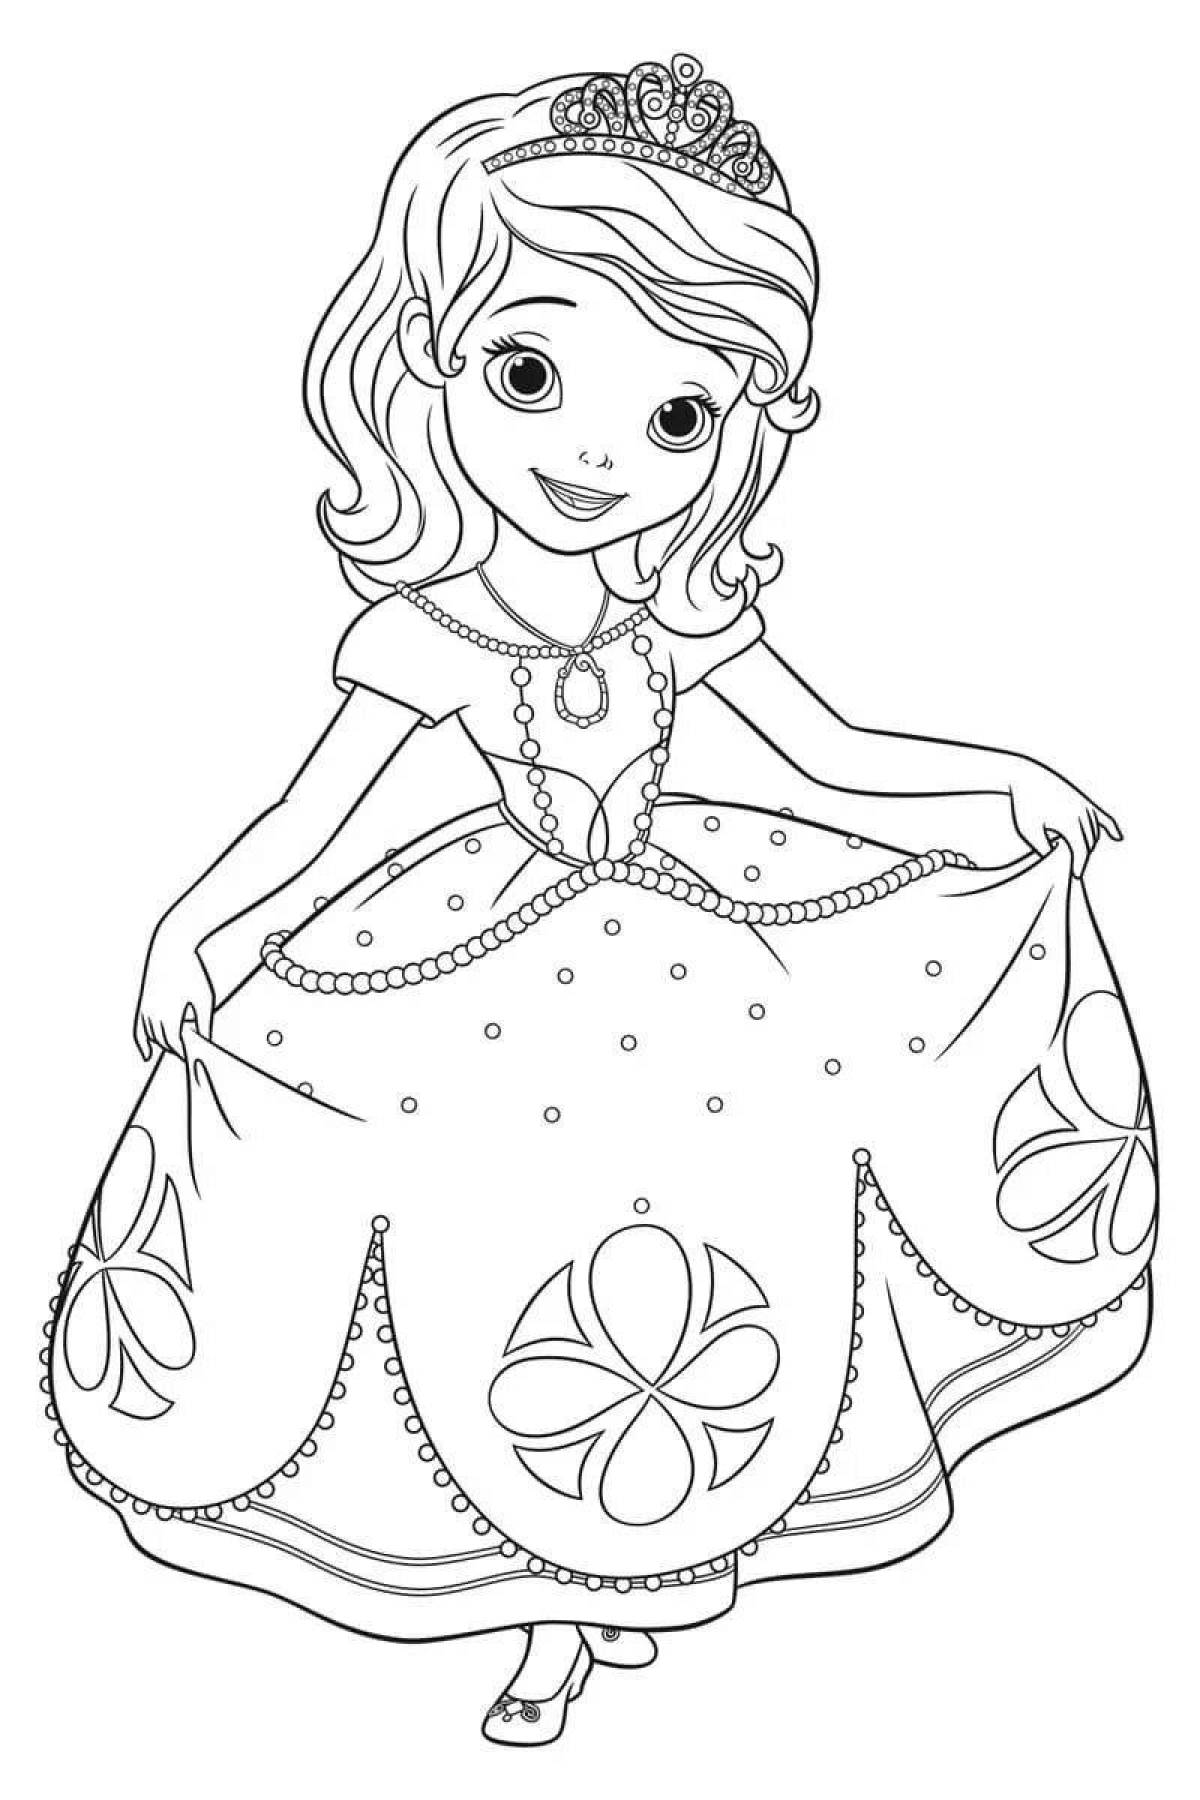 Увлекательная раскраска принцессы для девочек 4-5 лет